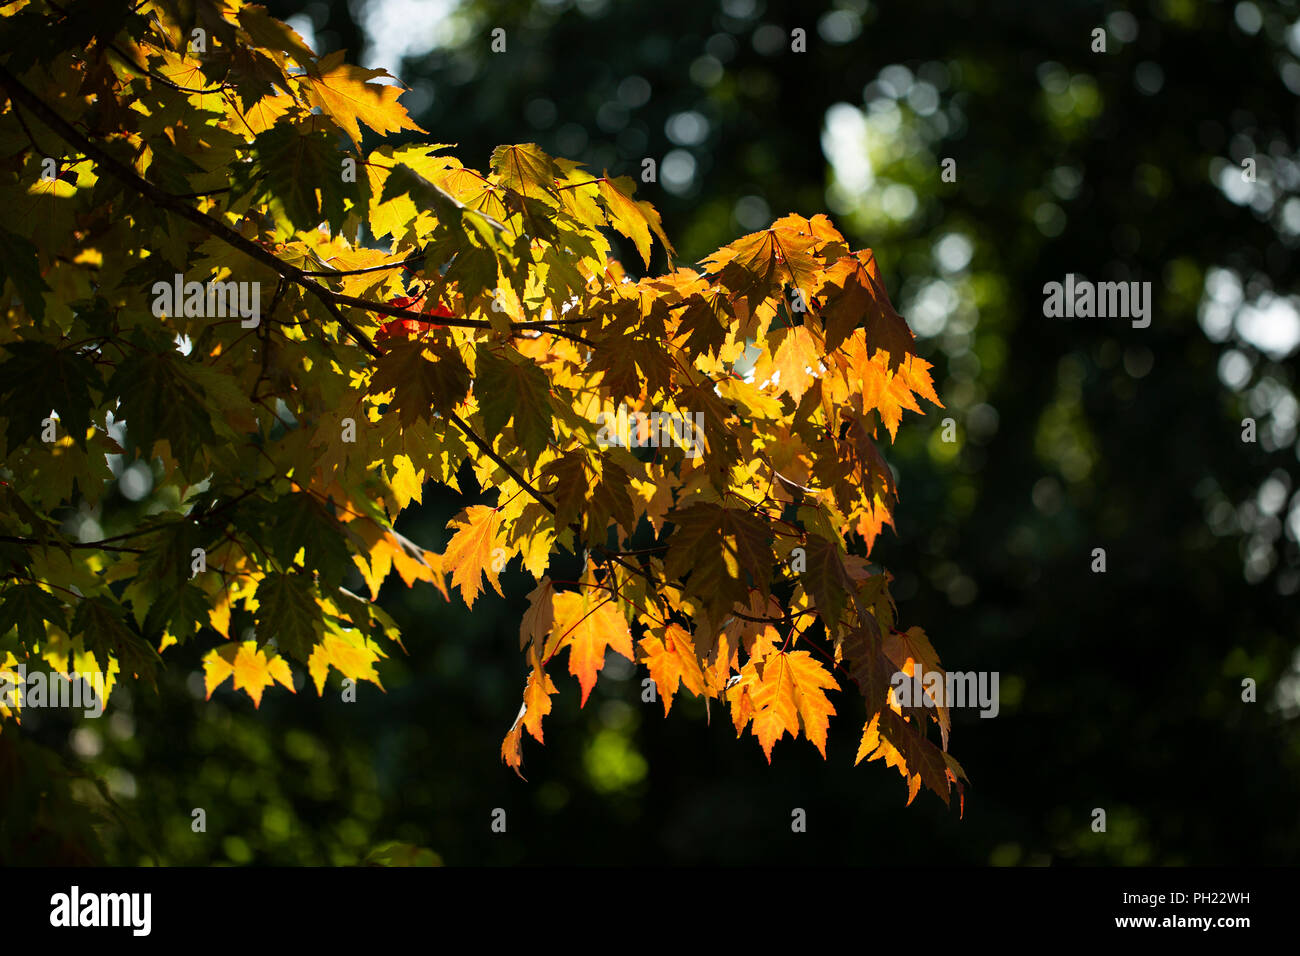 Ahorn (Acer) Blätter mit Herbstfarben Anfang zu wenden, mit den strahlenden Sonne spähen durch. Stockfoto